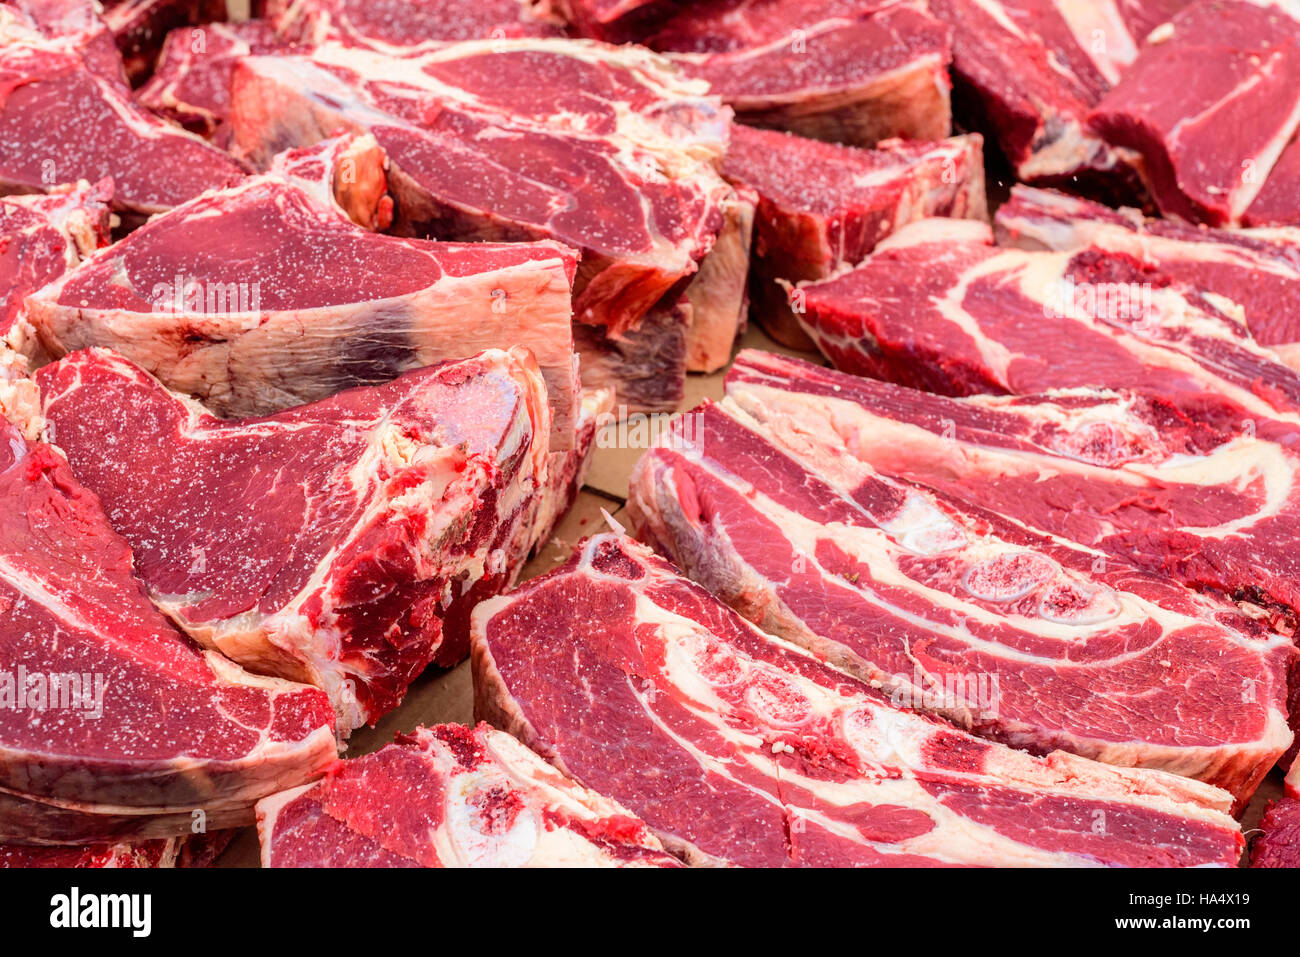 Haufen von frisch geschlachteten Rind stapeln sich auf einen Tisch für die Anzeige. Das Kuh-Fleisch ist eine lebendige rote Farbe. Stockfoto